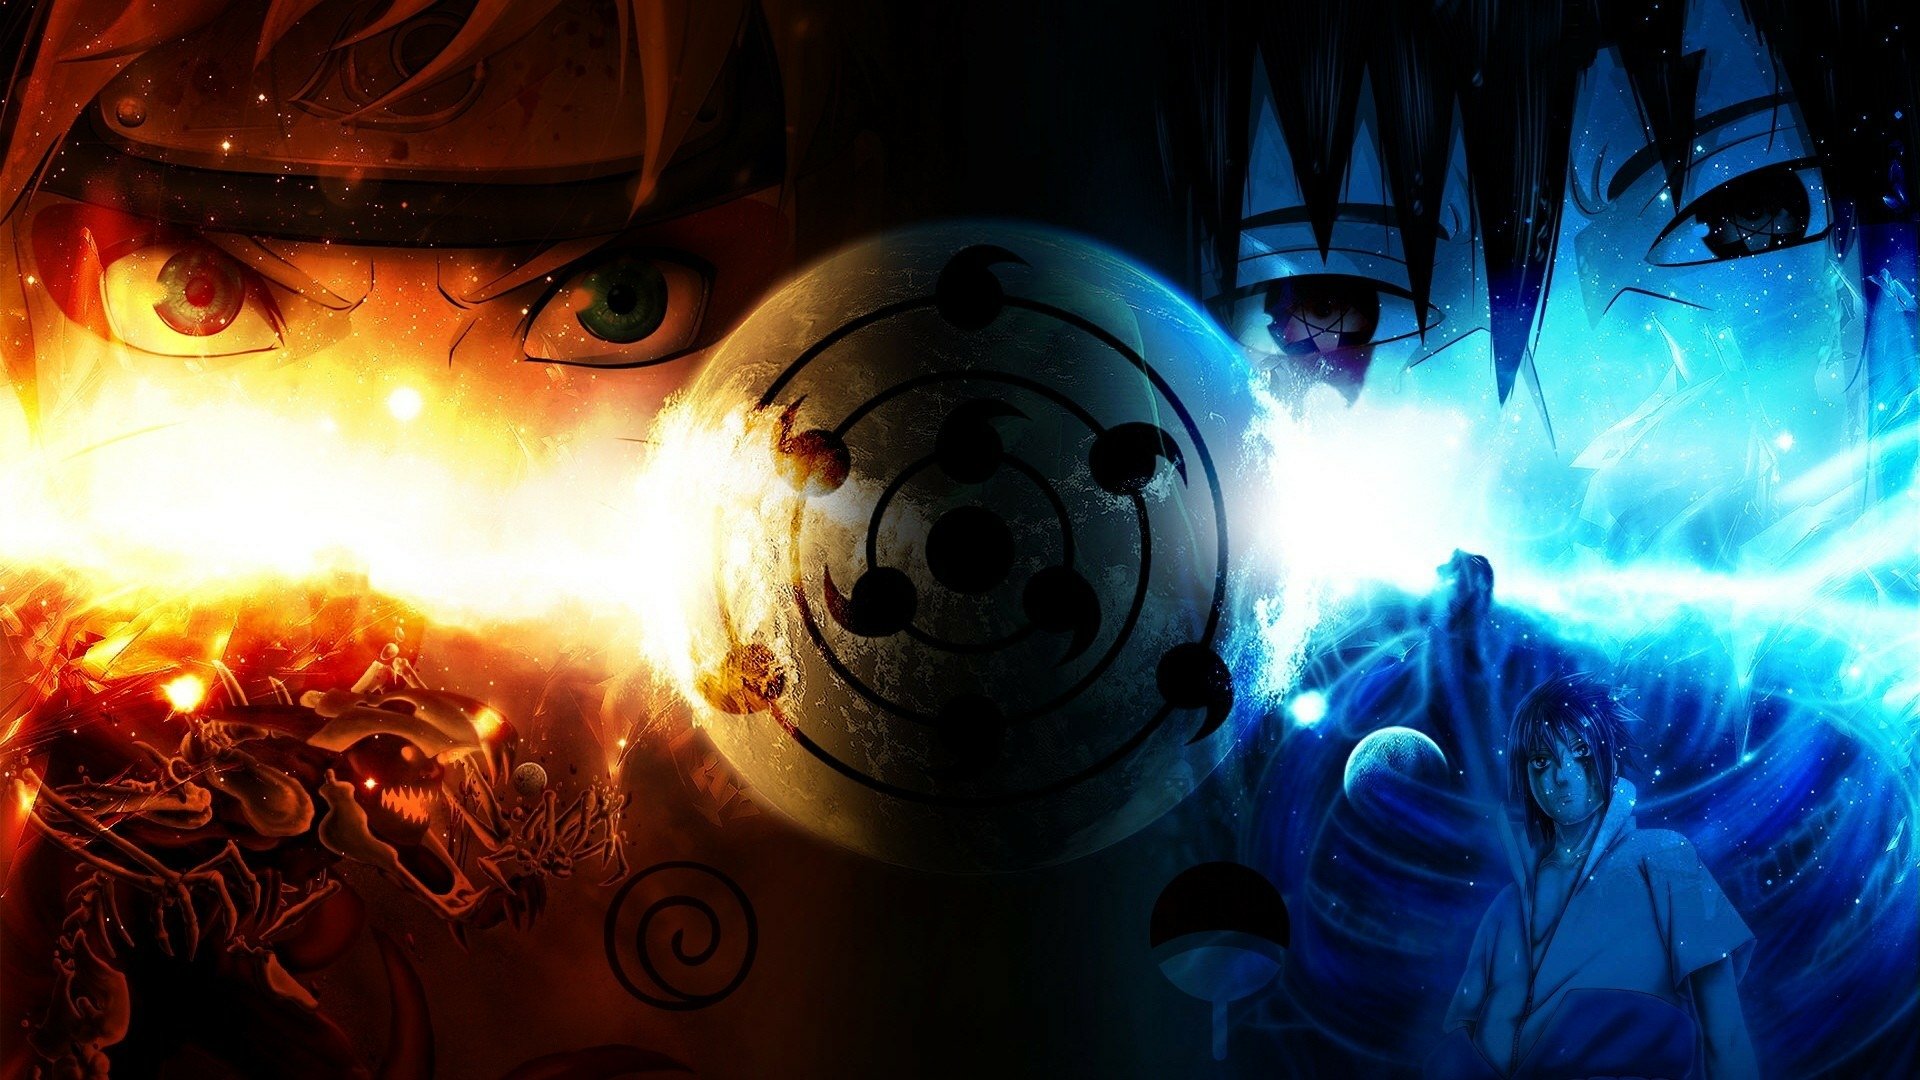 Imagens Naruto e Sasuke 